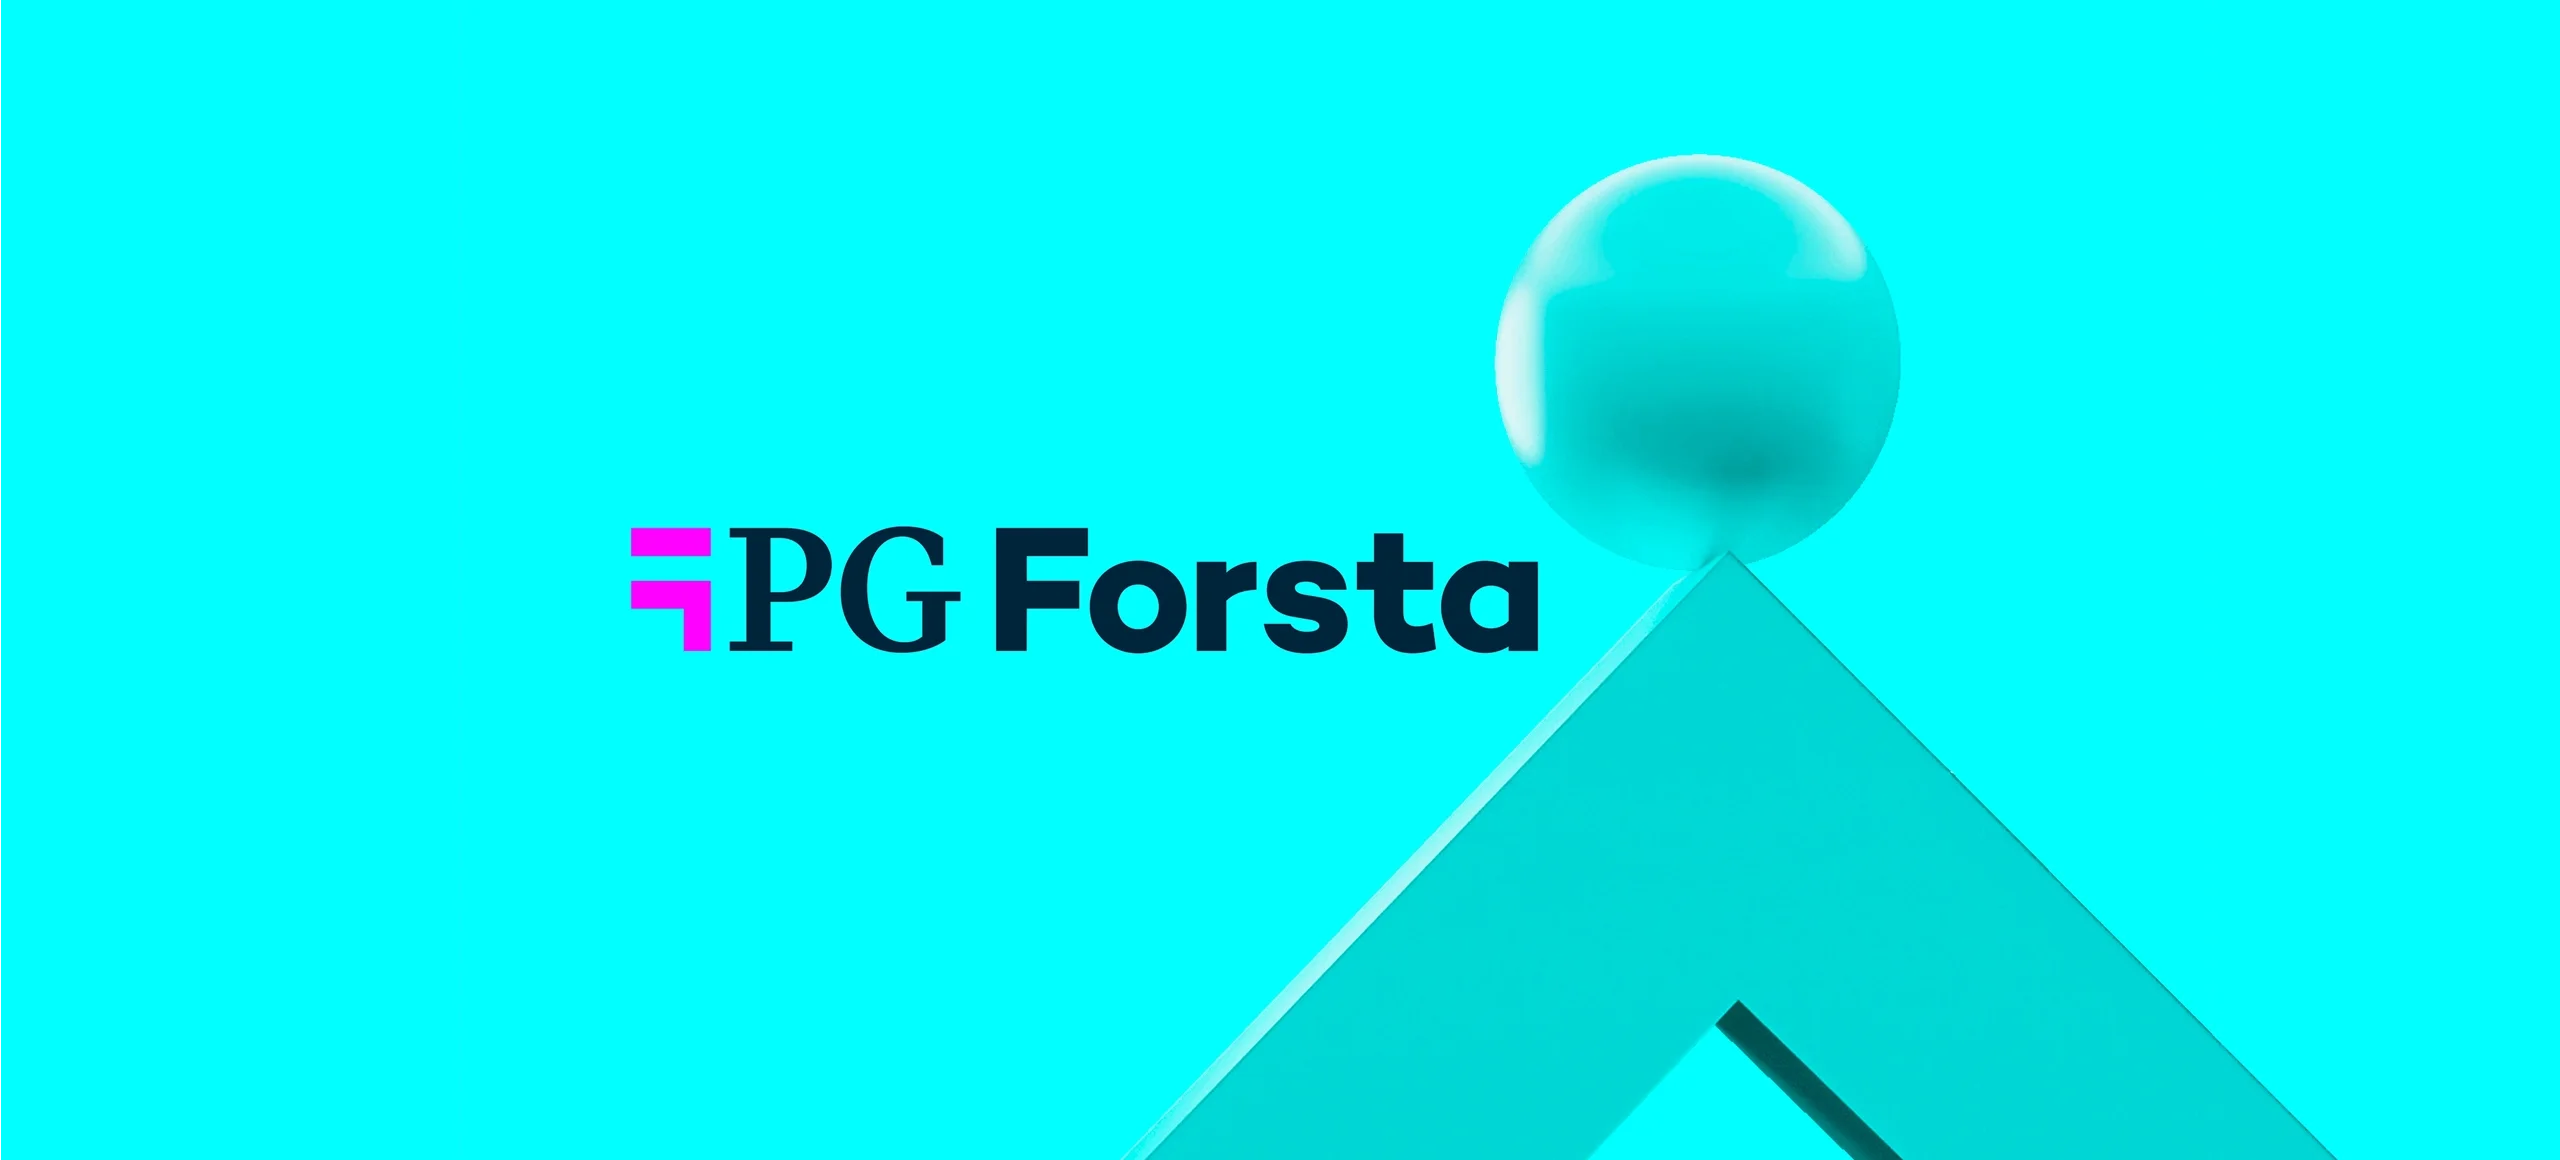 PG Forsta - News